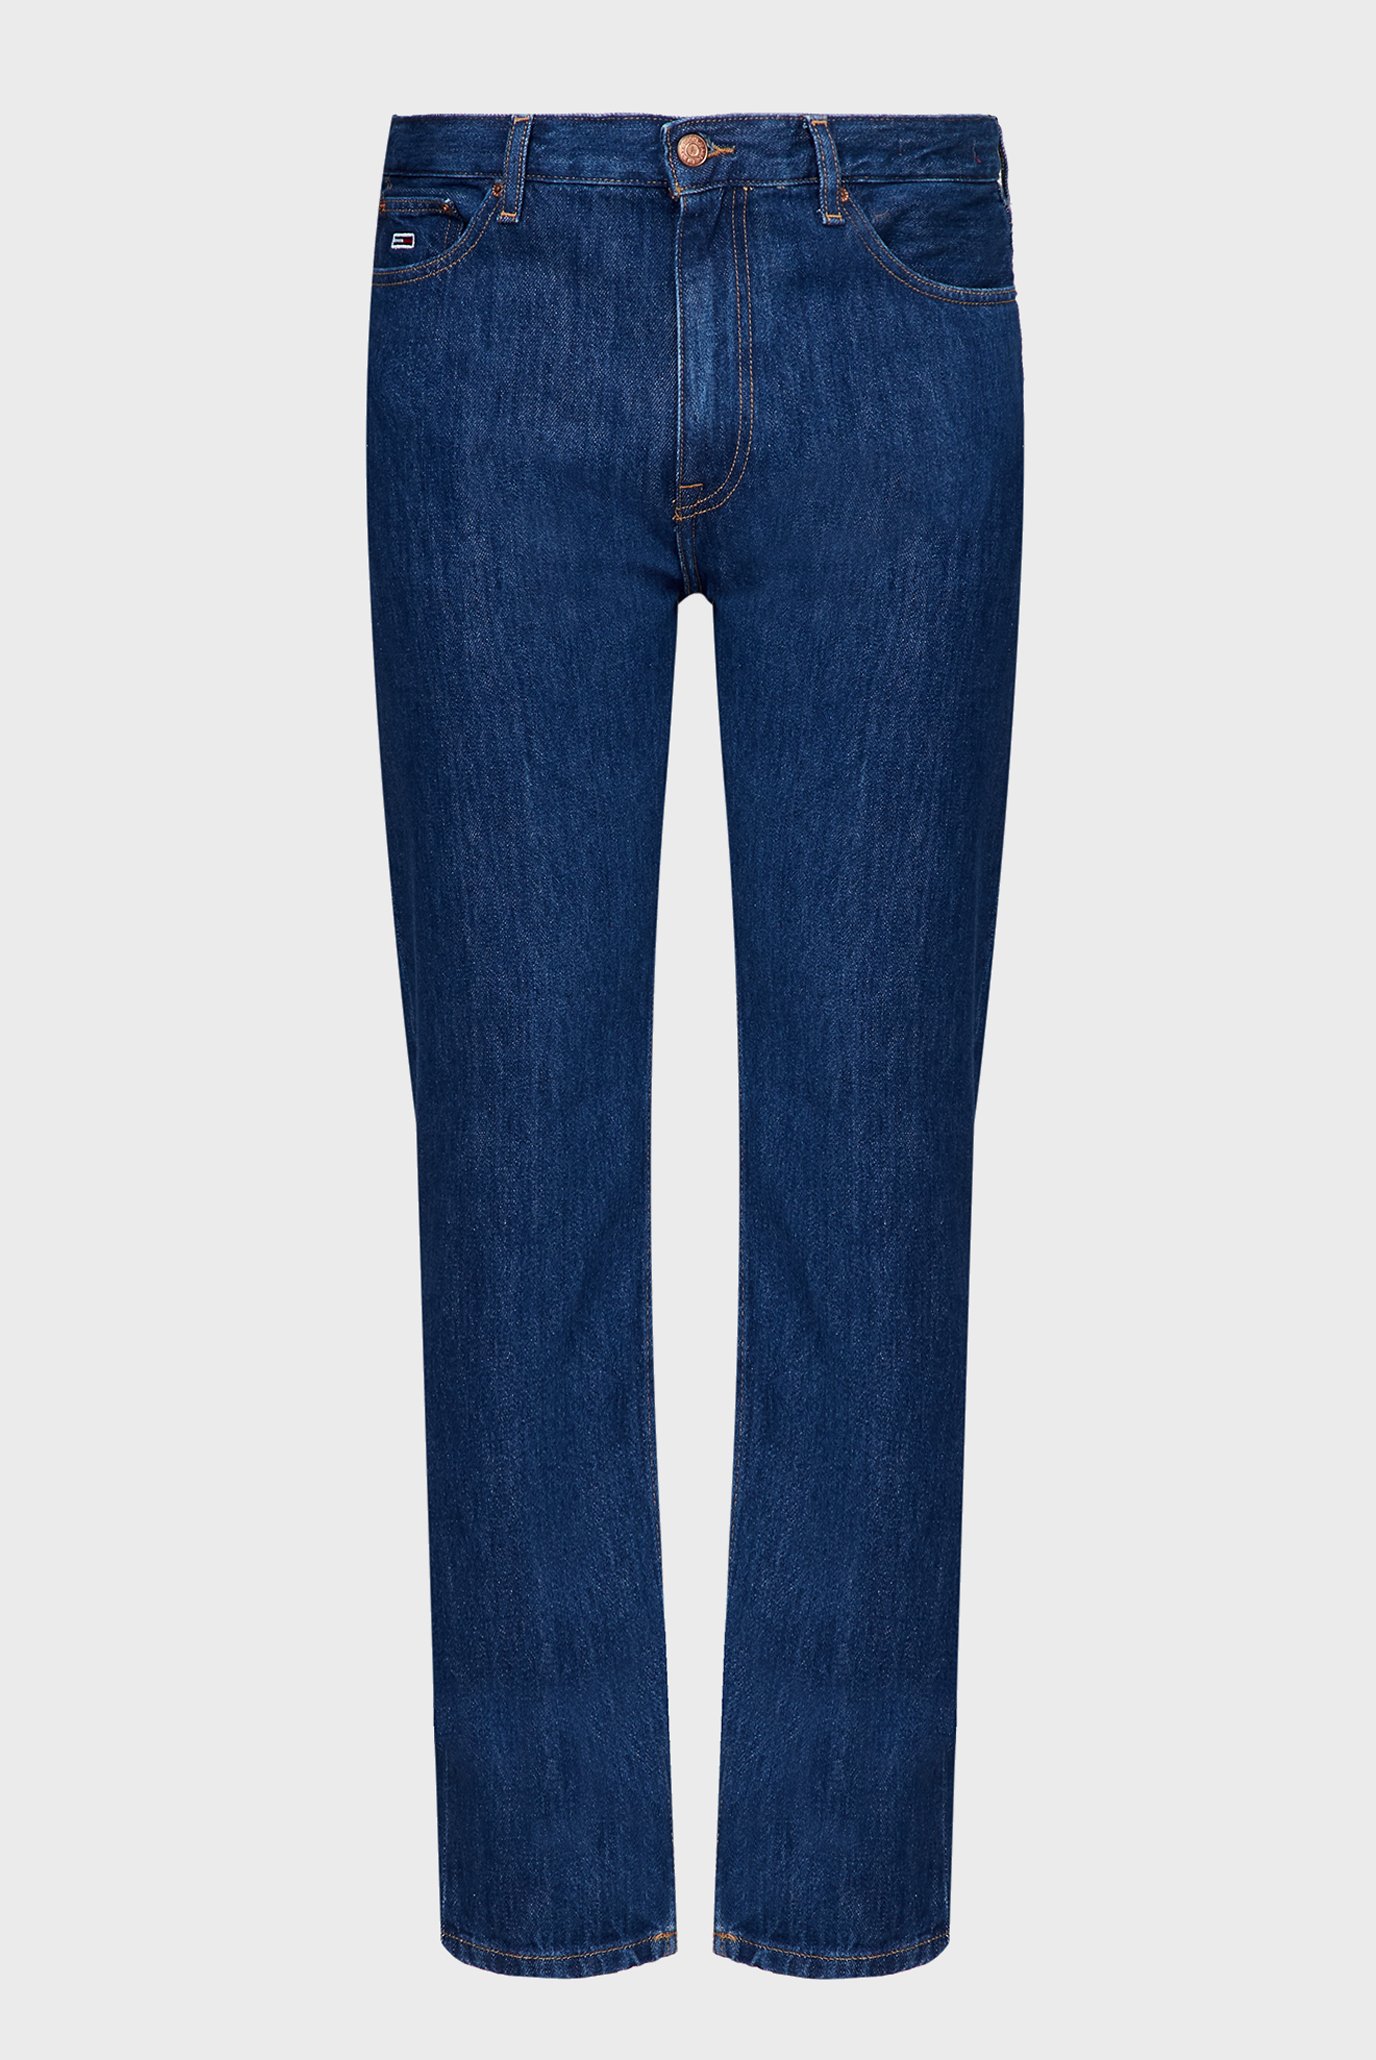 Мужские синие джинсы DAD JEAN RGLR TPRD CG4058 1